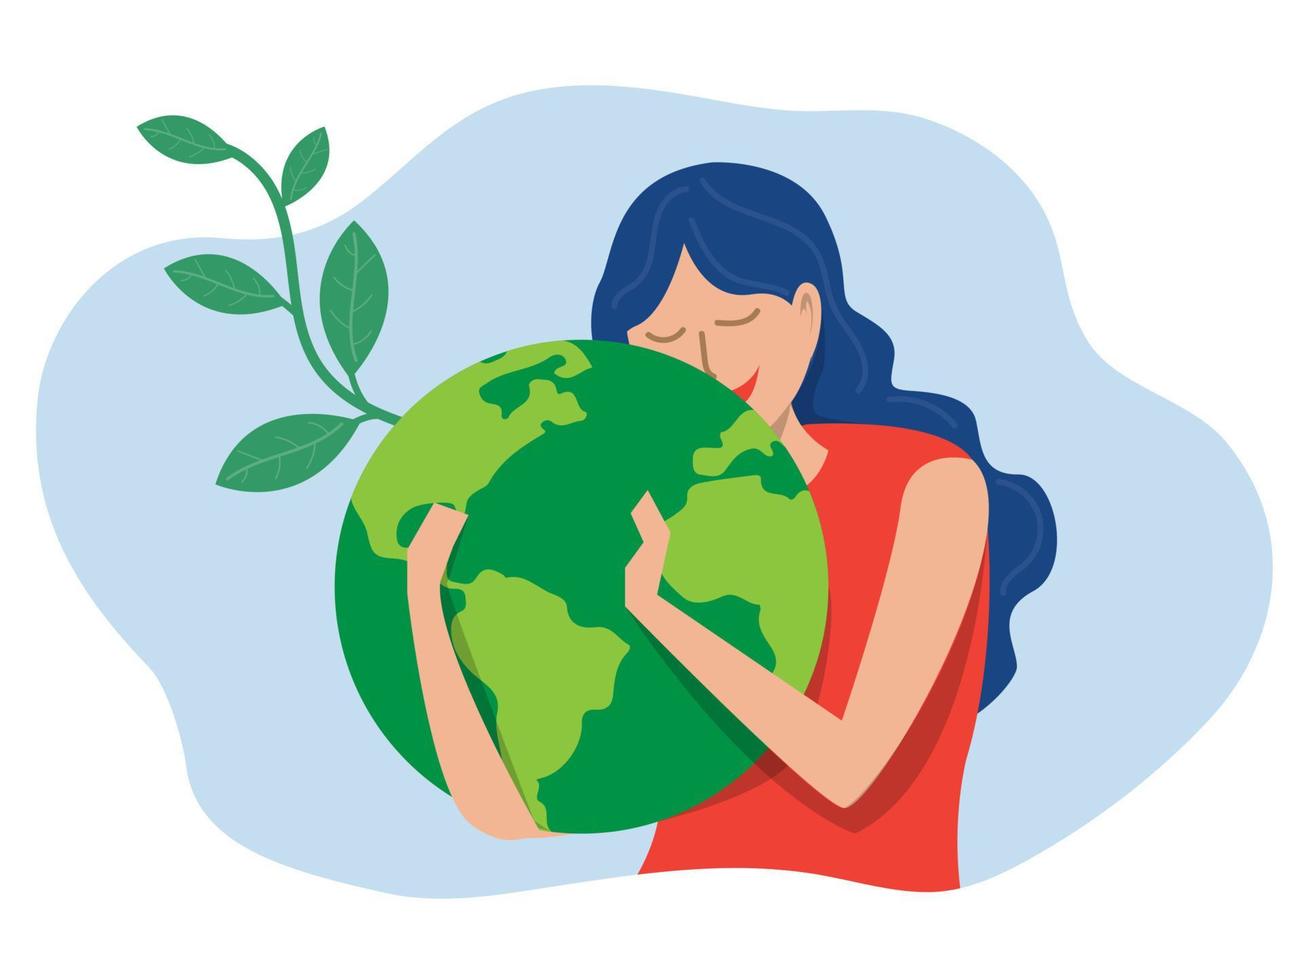 journée mondiale de la terre éco-énergie verte, jeune femme embrassant la planète terre avec la journée mondiale de la terre et sauver la planète concept de conservation, de protection et de consommation raisonnable des ressources naturelles. vecteur